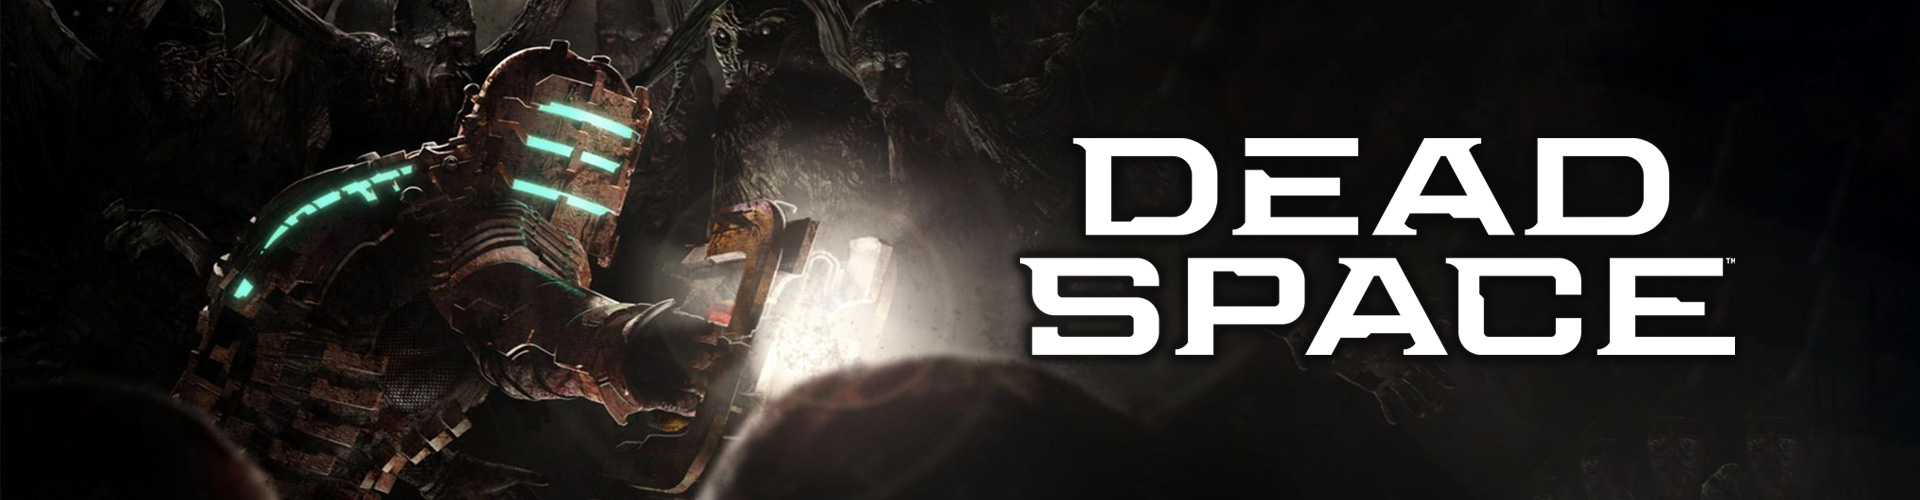 Dead Space um jogo de survival horror